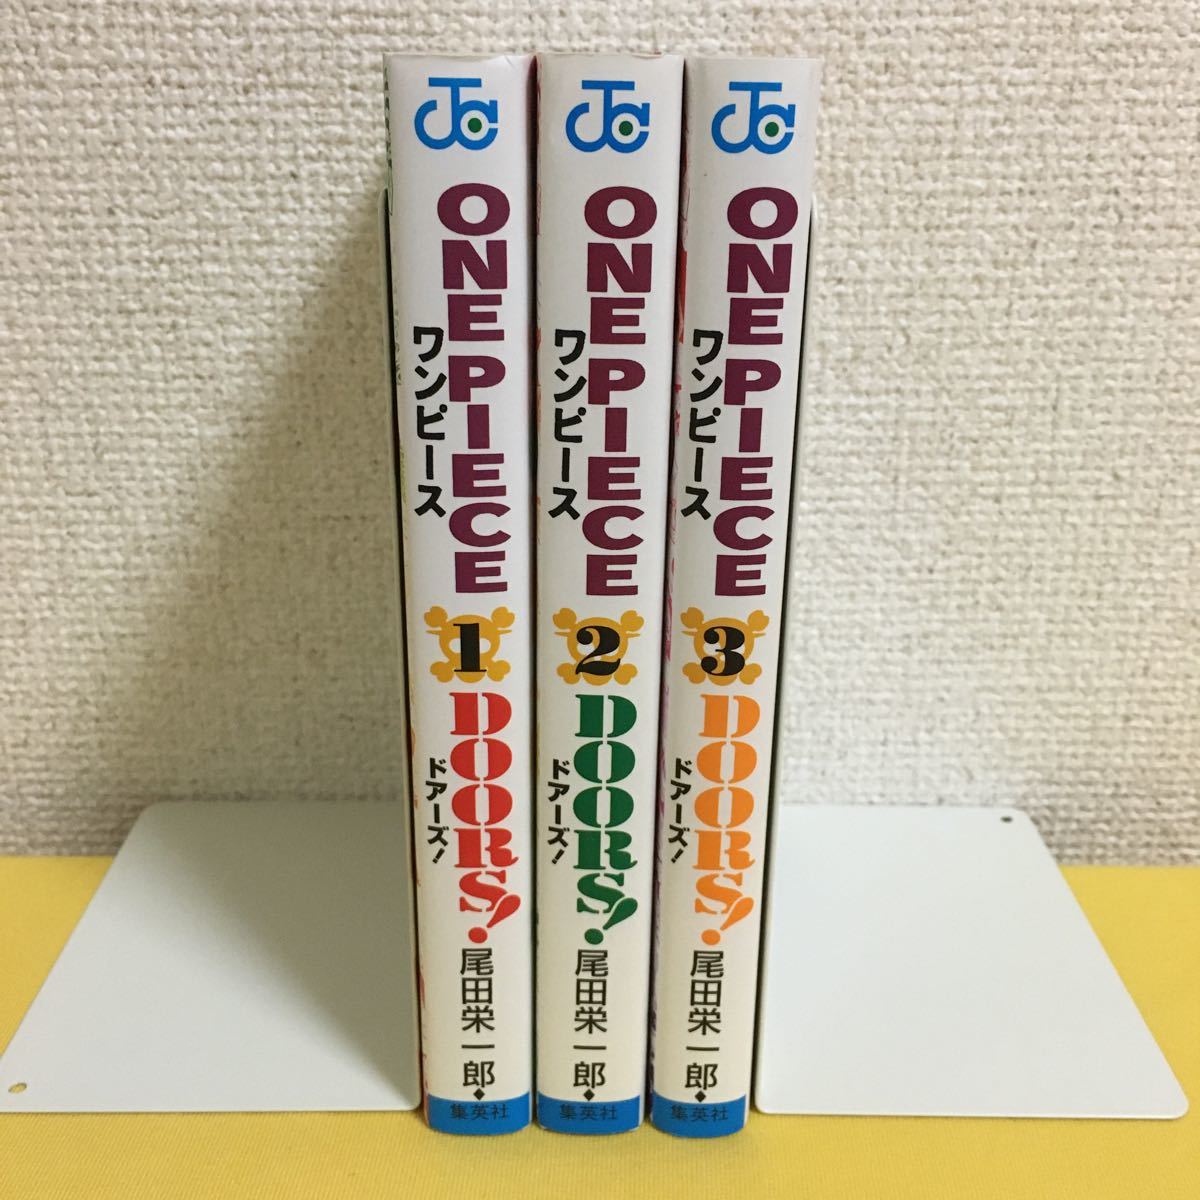 ONE PIECE DOORS! ワンピース ドアーズ 1〜3巻 セット